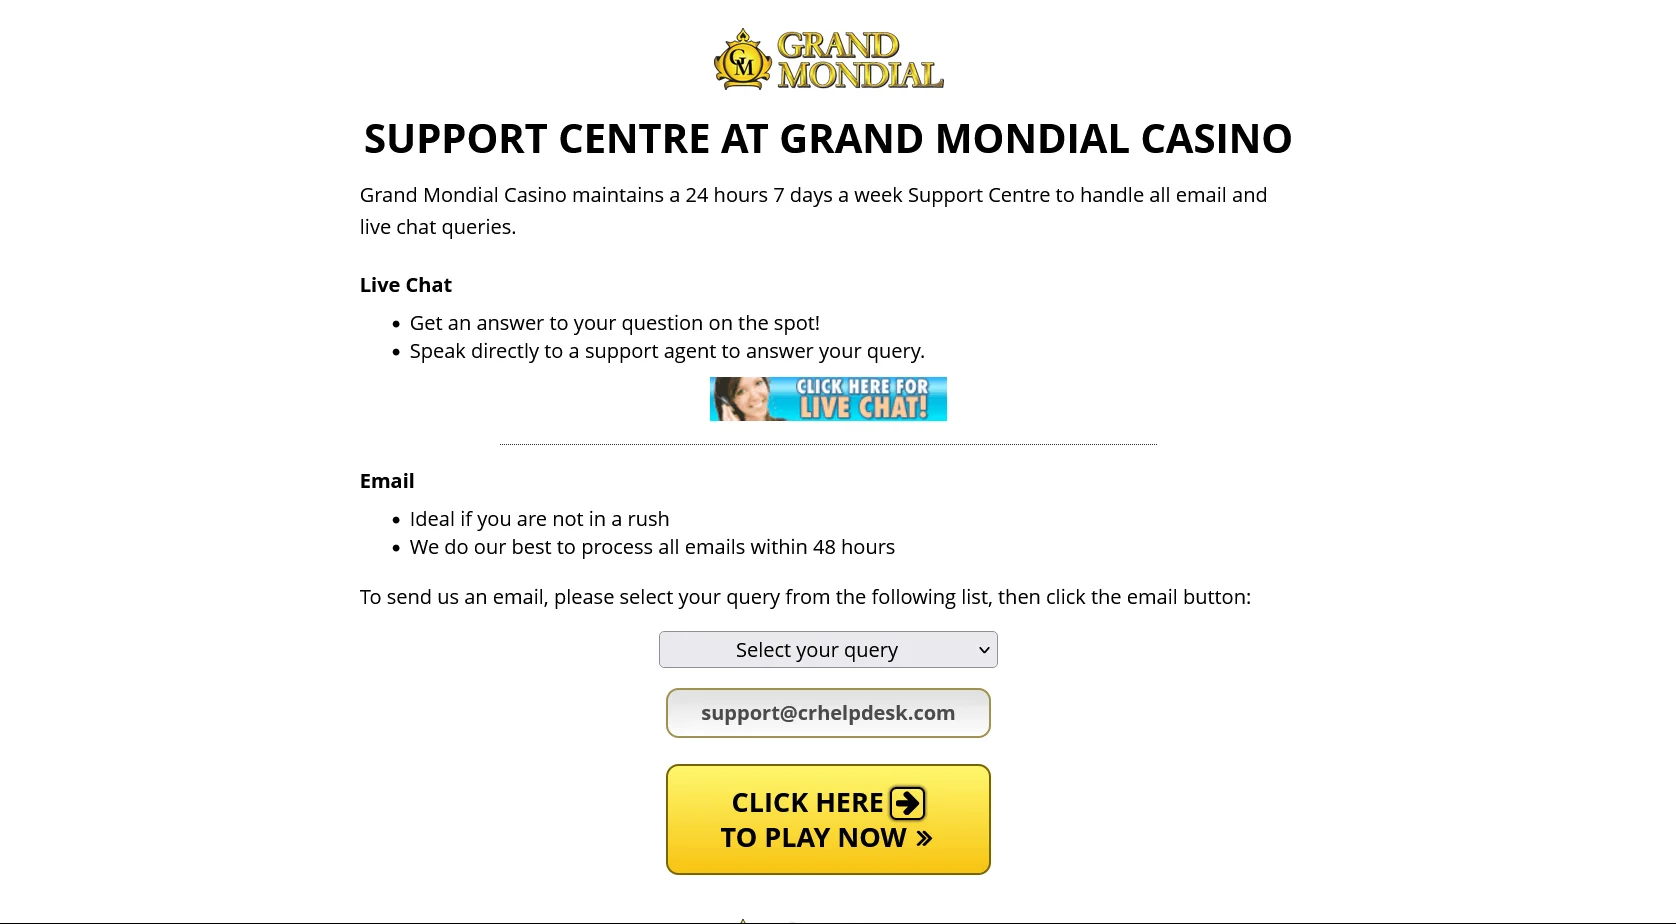 Spôsoby vkladov a výberov v kasíne Grand Mondial